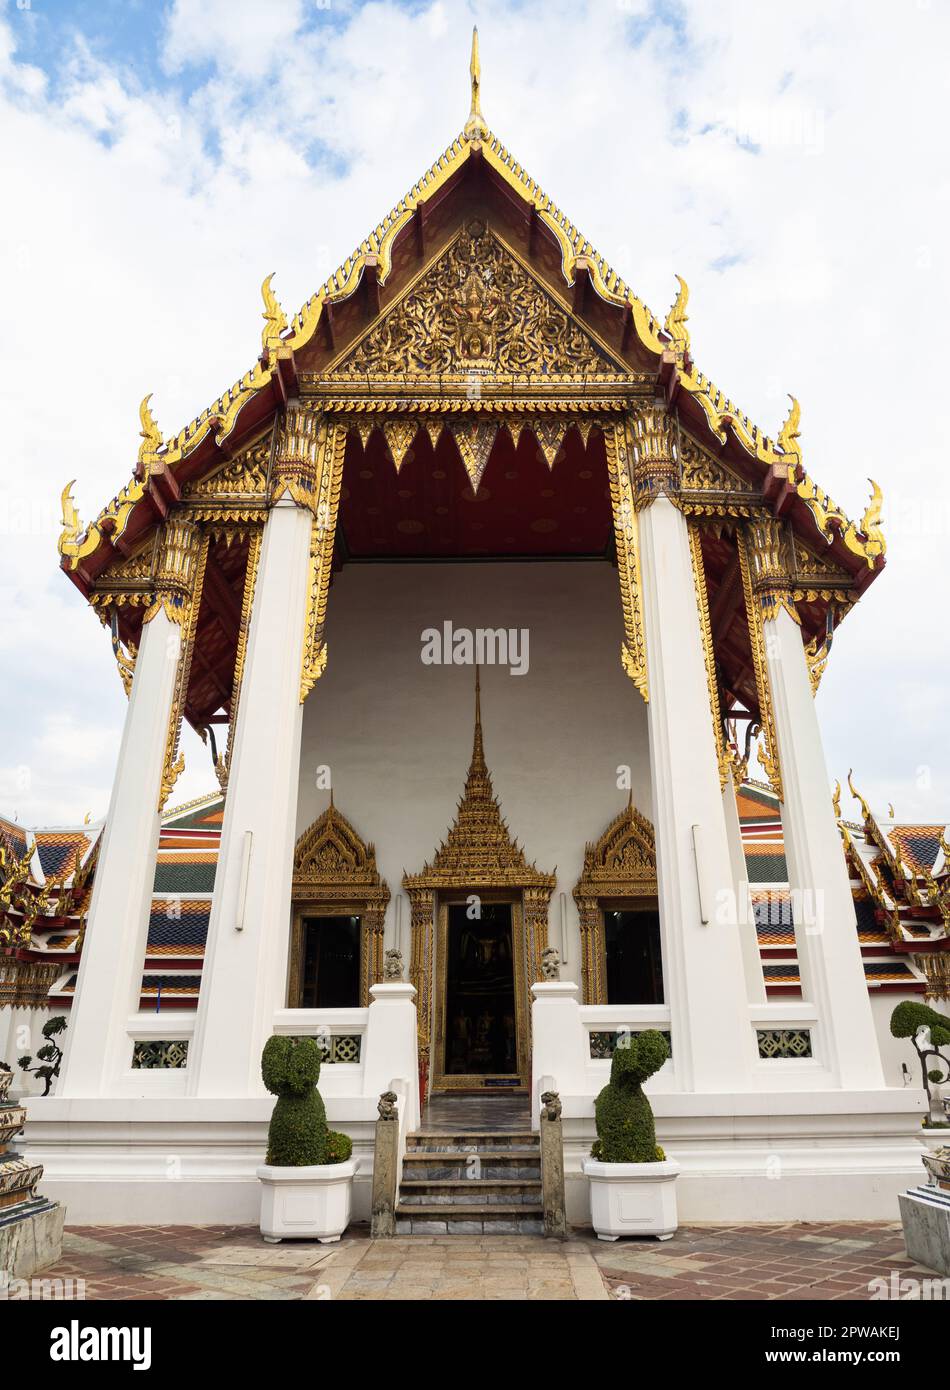 Dieses Foto zeigt ein kleines Tempelgebäude mit aufwändigen goldenen Dachdetails im Wat Pho Komplex in Bangkok, Thailand. Der Komplex de Stockfoto